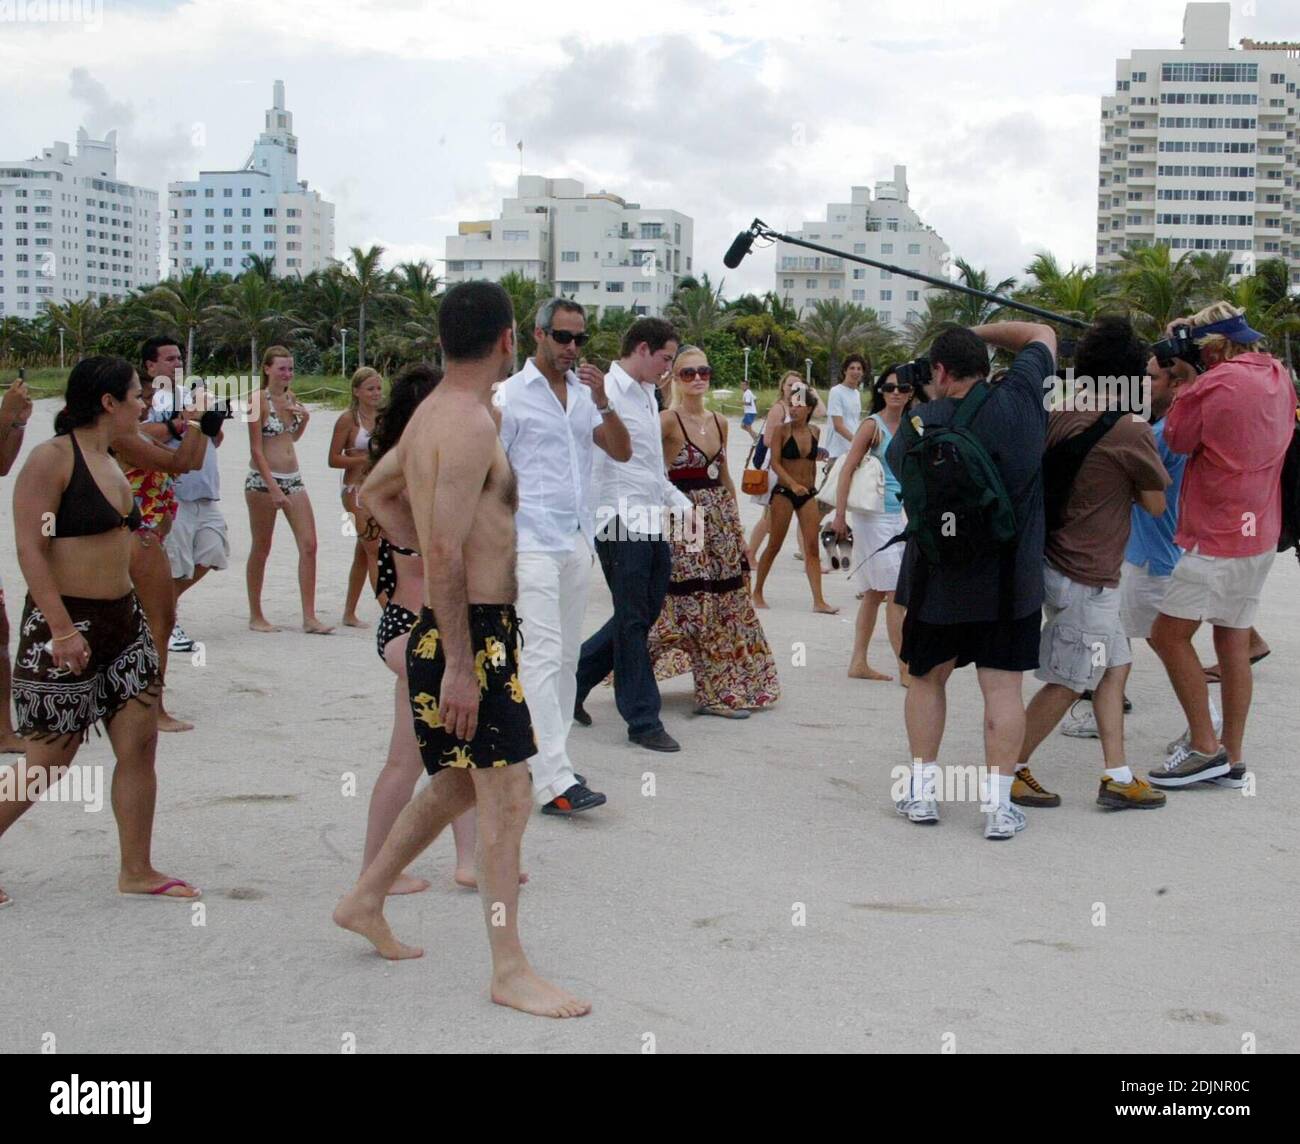 Paris Hilton causó un gran revuelo con fotógrafos y transeúntes en Miami Beach hoy. La heredera esquivó una basura puede golpear durante la acción mientras fue entrevistada para promover su álbum debut 'Paris' en Miami Beach, FL, 8/16/06. Foto de stock